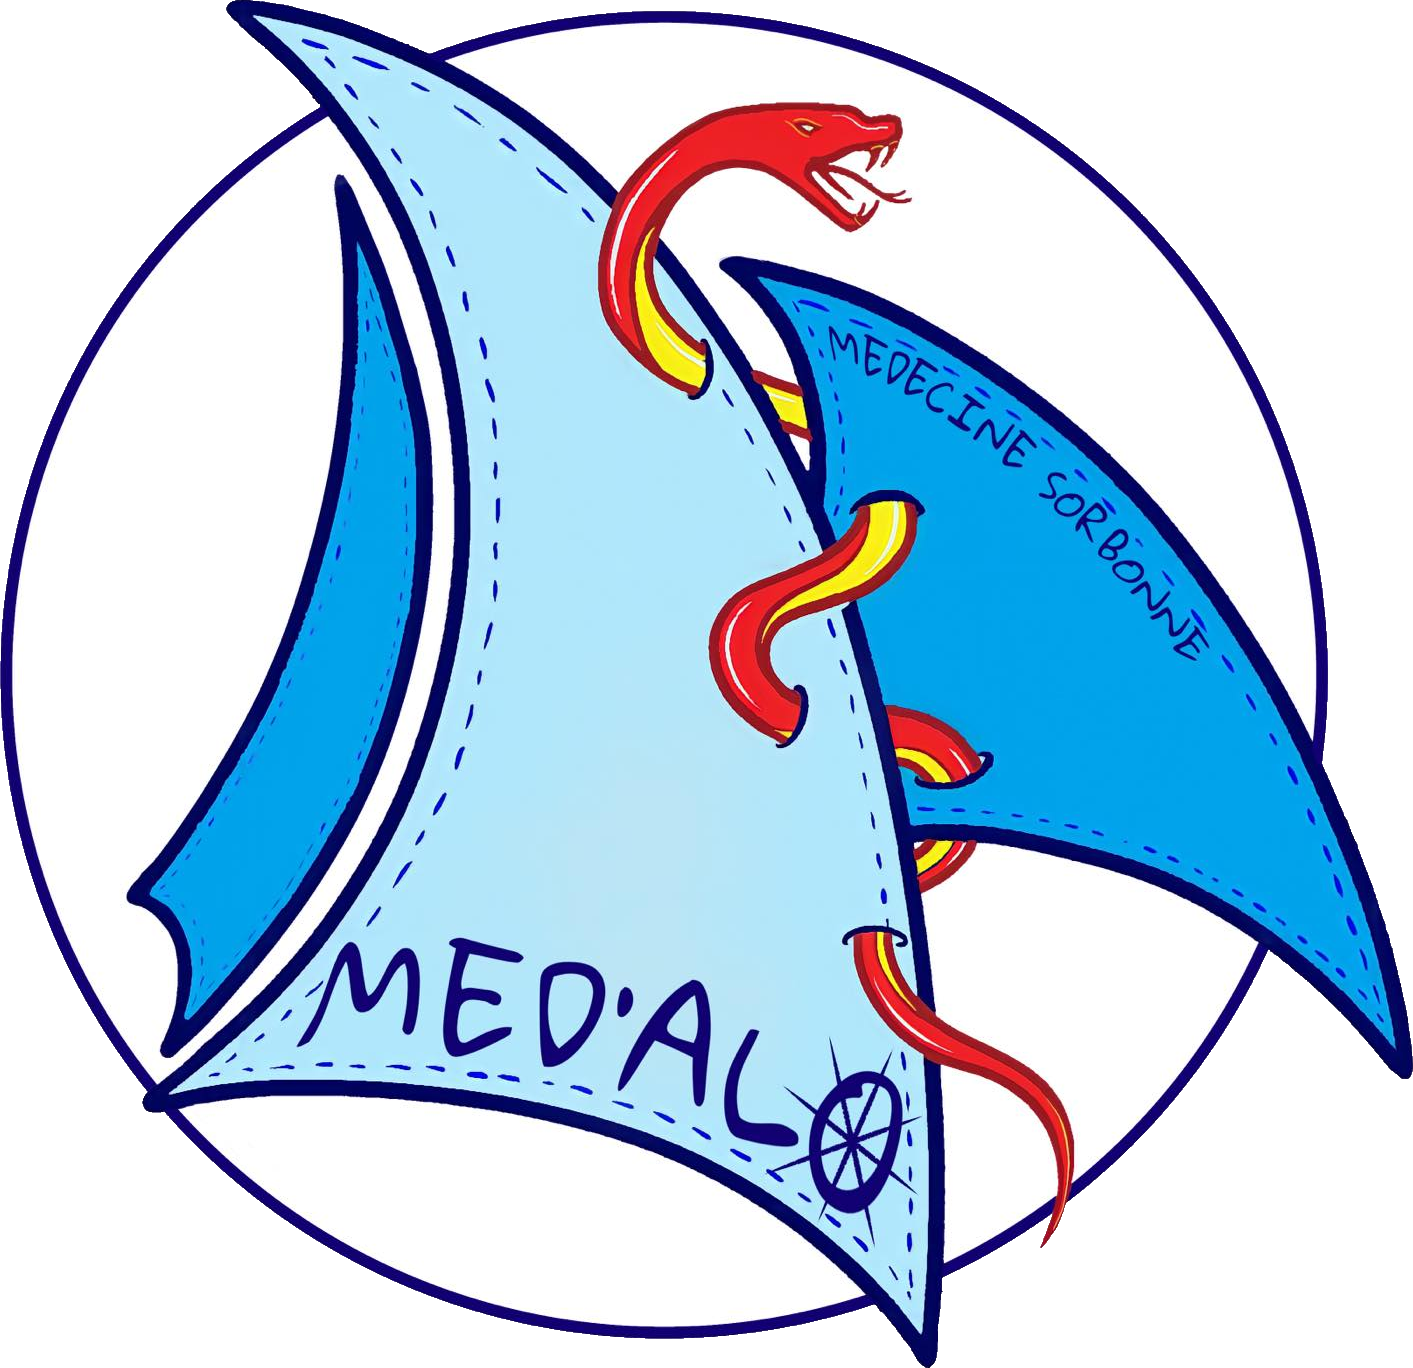 Les Med’Al logo